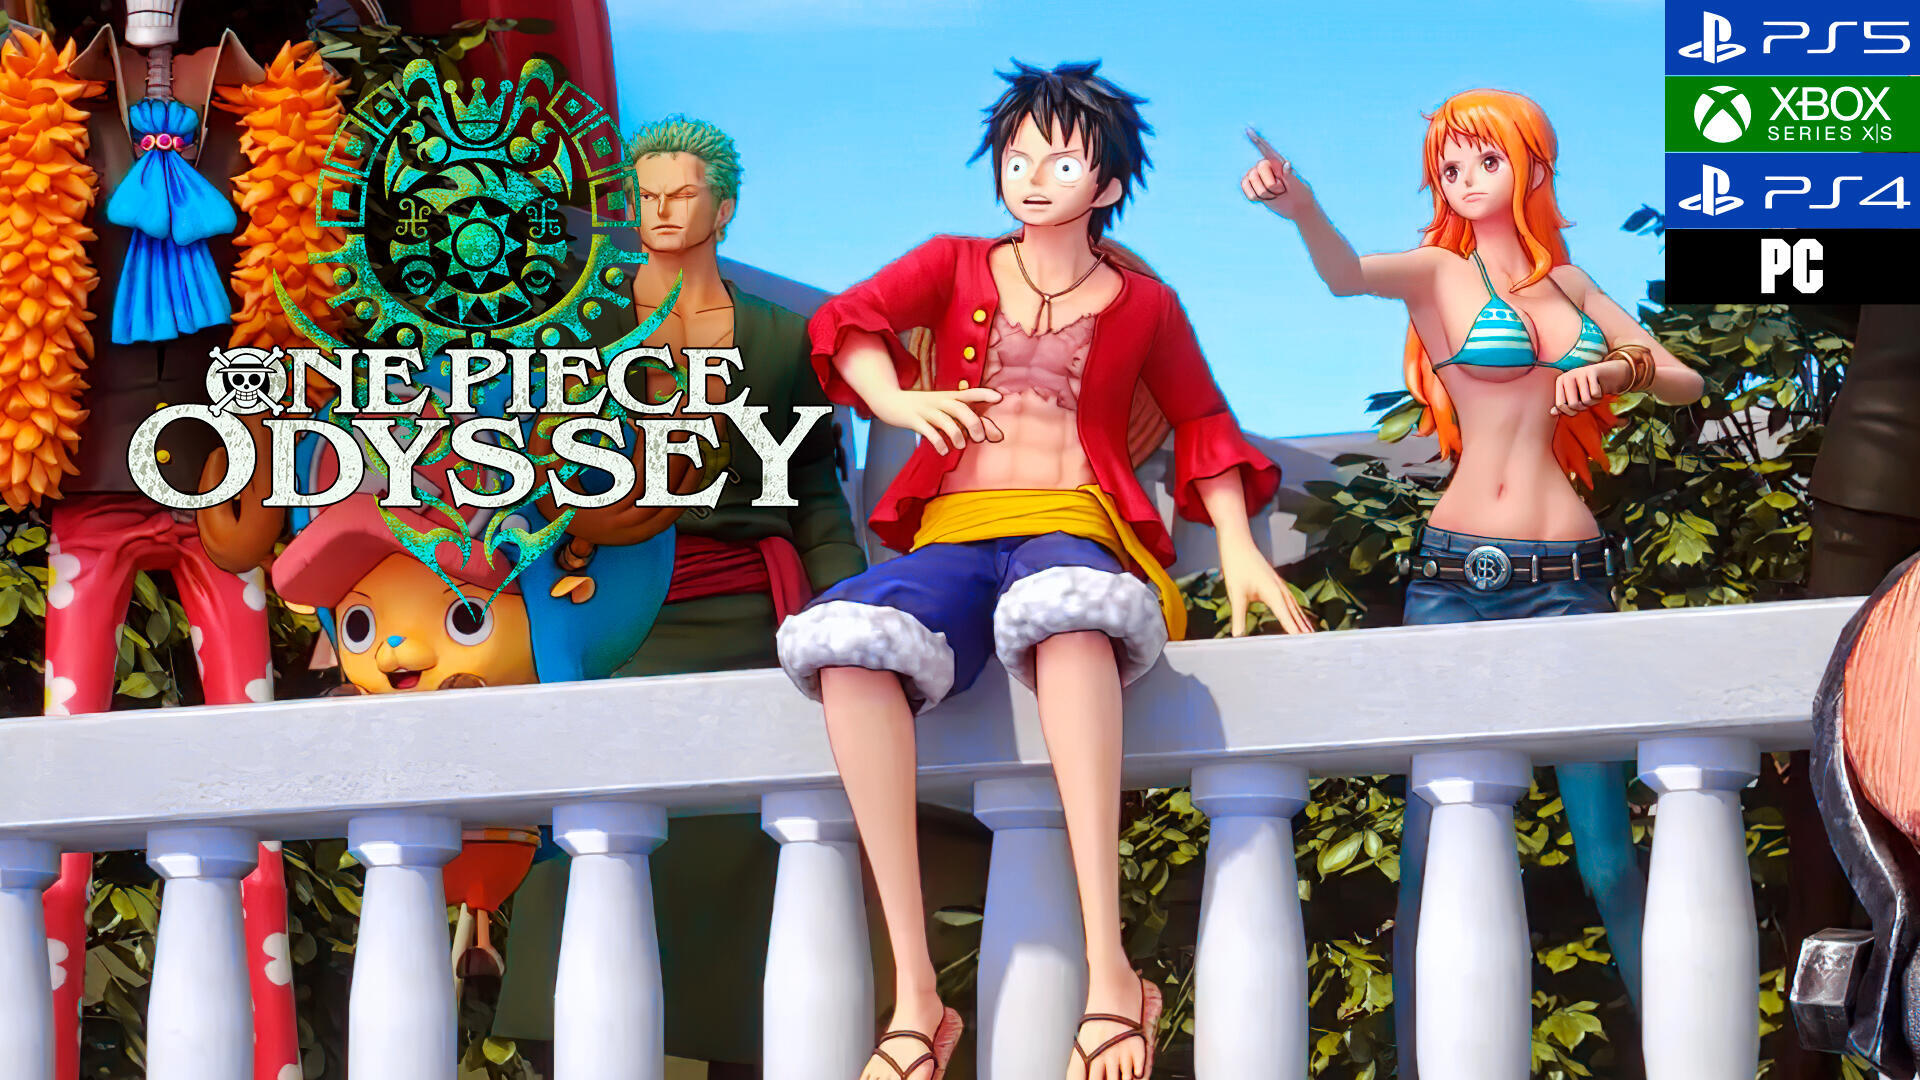 Impresiones One Piece Odyssey Un llamativo JRPG con Luffy y compañía